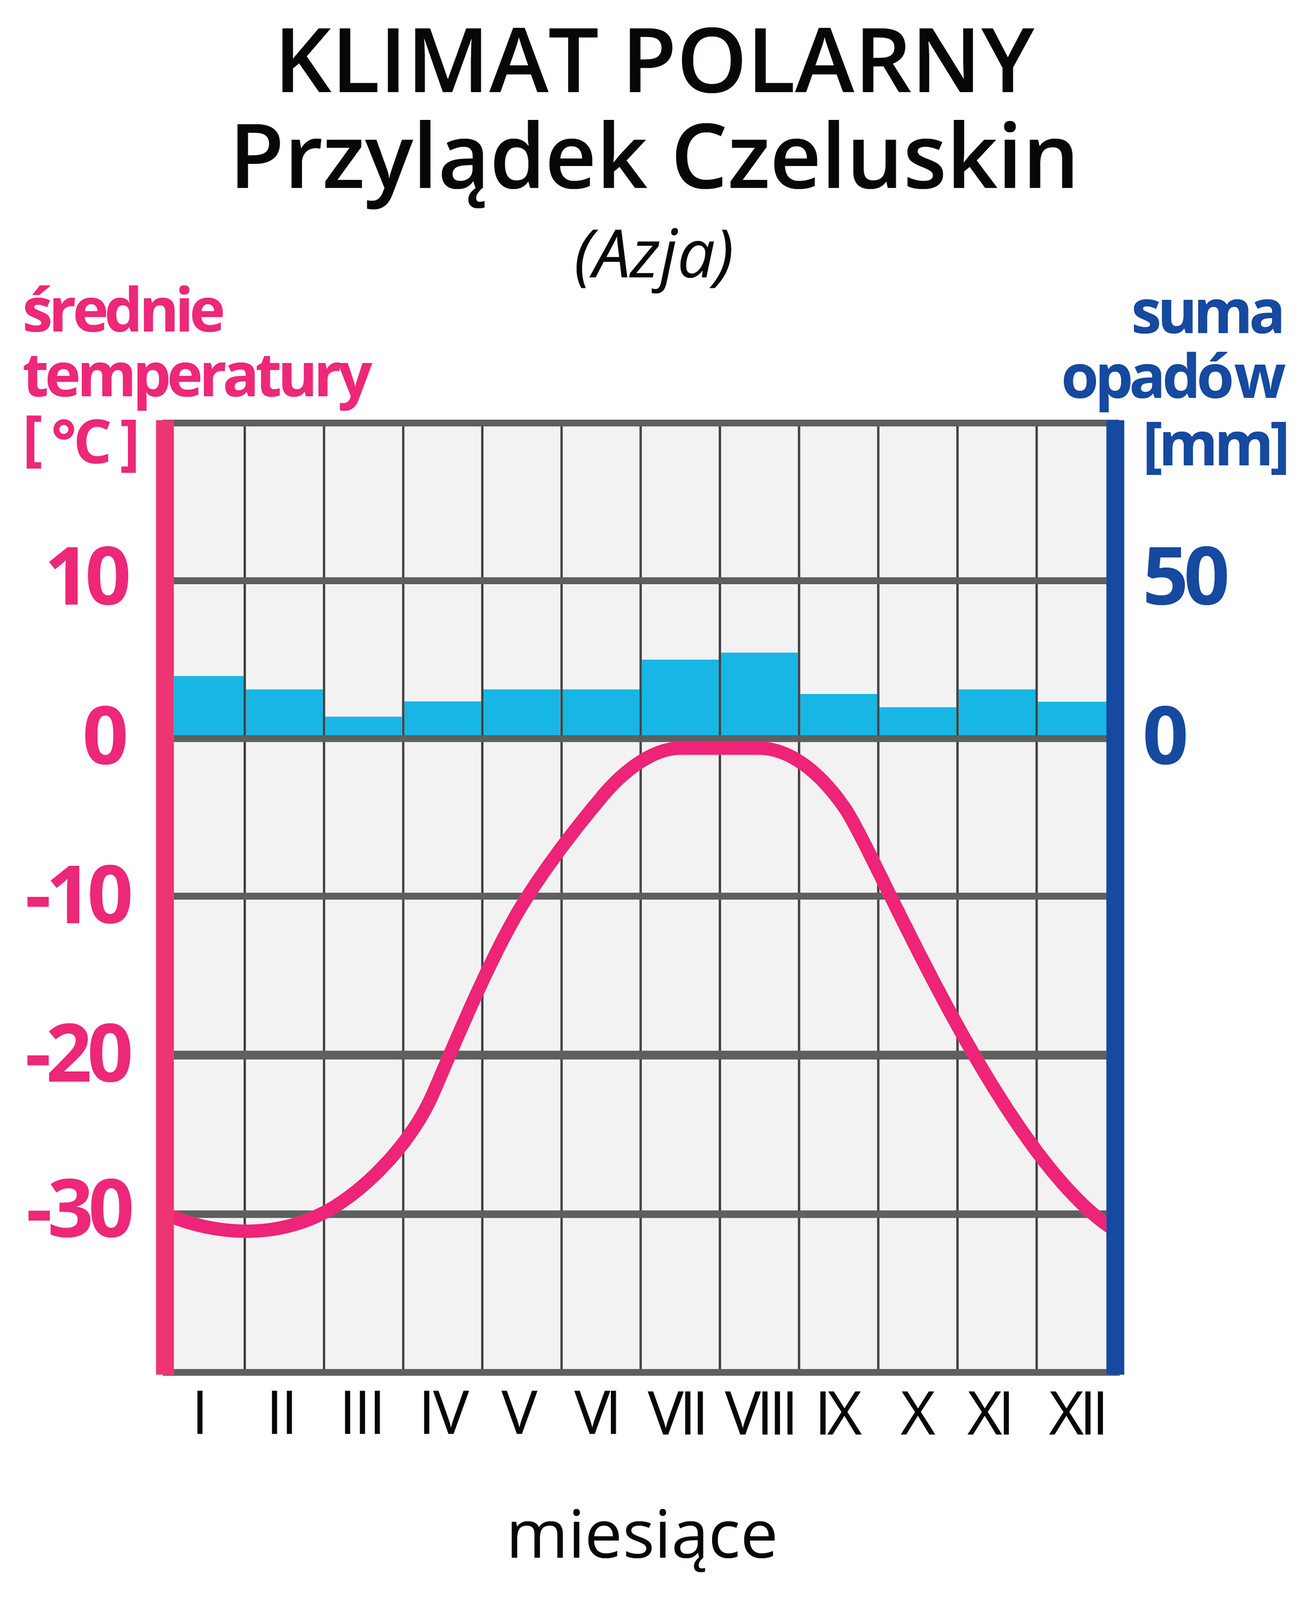 Ilustracja prezentuje wykres – klimatogram, klimatu polarnego na Przylądku Czeluskim w Azji. Na lewej osi wykresu wyskalowano średnie temperatury w stopniach Celsjusza, na prawej osi wykresu wyskalowano sumy opadów w mm. Na osi poziomej zaznaczono cyframi rzymskimi kolejne miesiące. Czerwona pozioma linia na wykresie, to średnie temperatury w poszczególnych miesiącach. Tutaj linia rozpoczyna się na wysokości -30 stopni Celsjusza w styczniu i wznosi się w poszczególnych miesiącach do około 0 stopni w lipcu, po czym opada do -31 stopni w grudniu. Niebieskie słupki, to wysokości sum opadów w poszczególnych miesiącach. Opady nie przekraczają 25 mm.